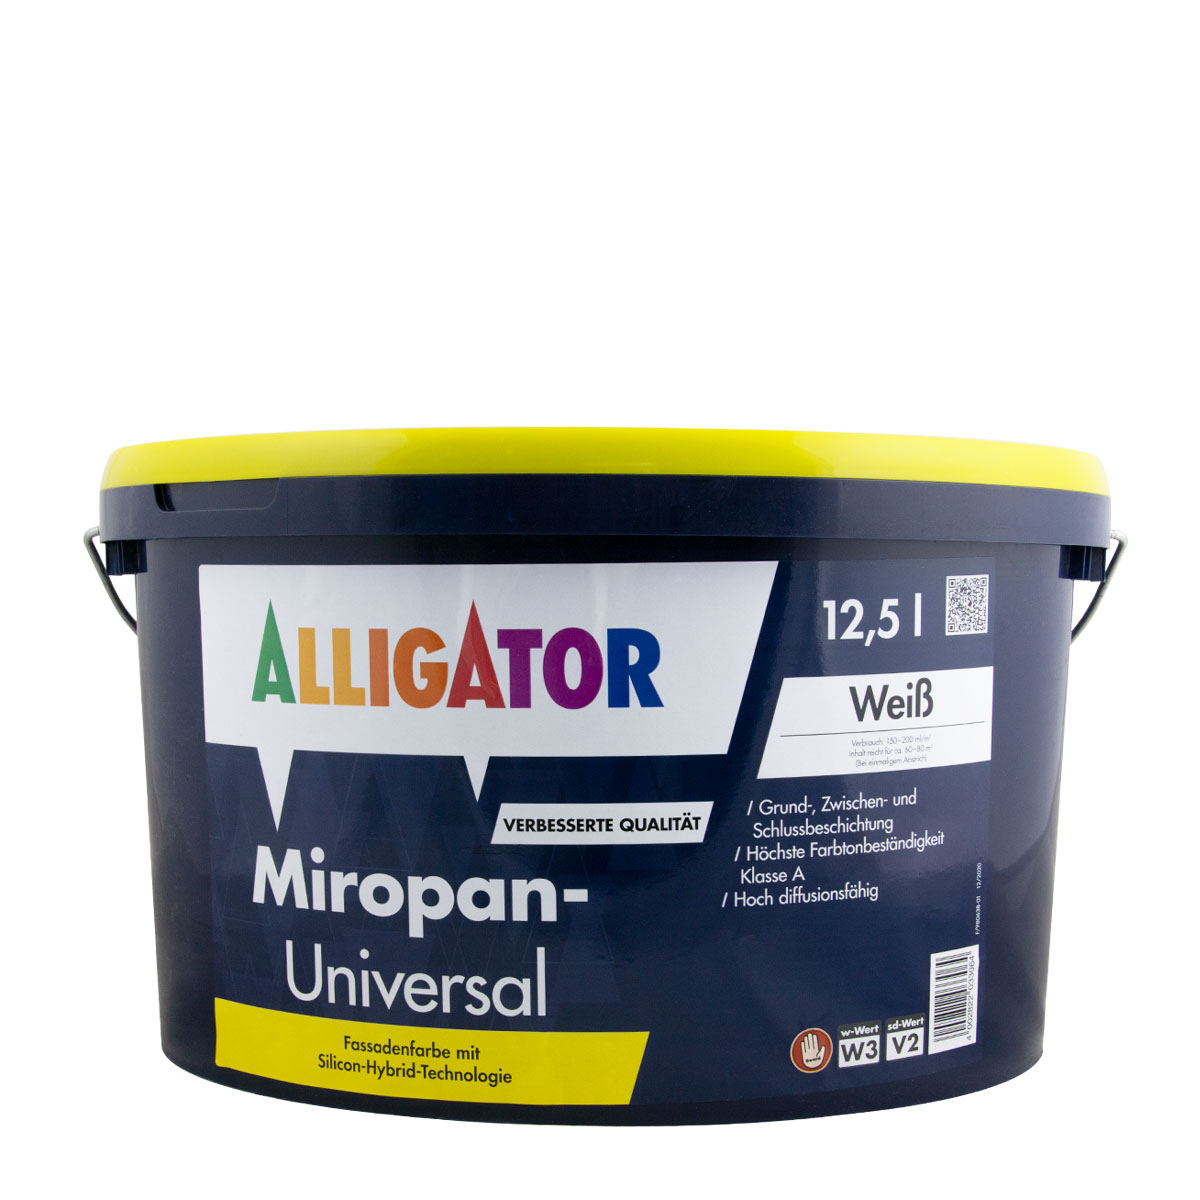 Alligator Miropan Universal 12,5L weiß, Silicon-Hybrid-Technologie, Fassadenfarbe